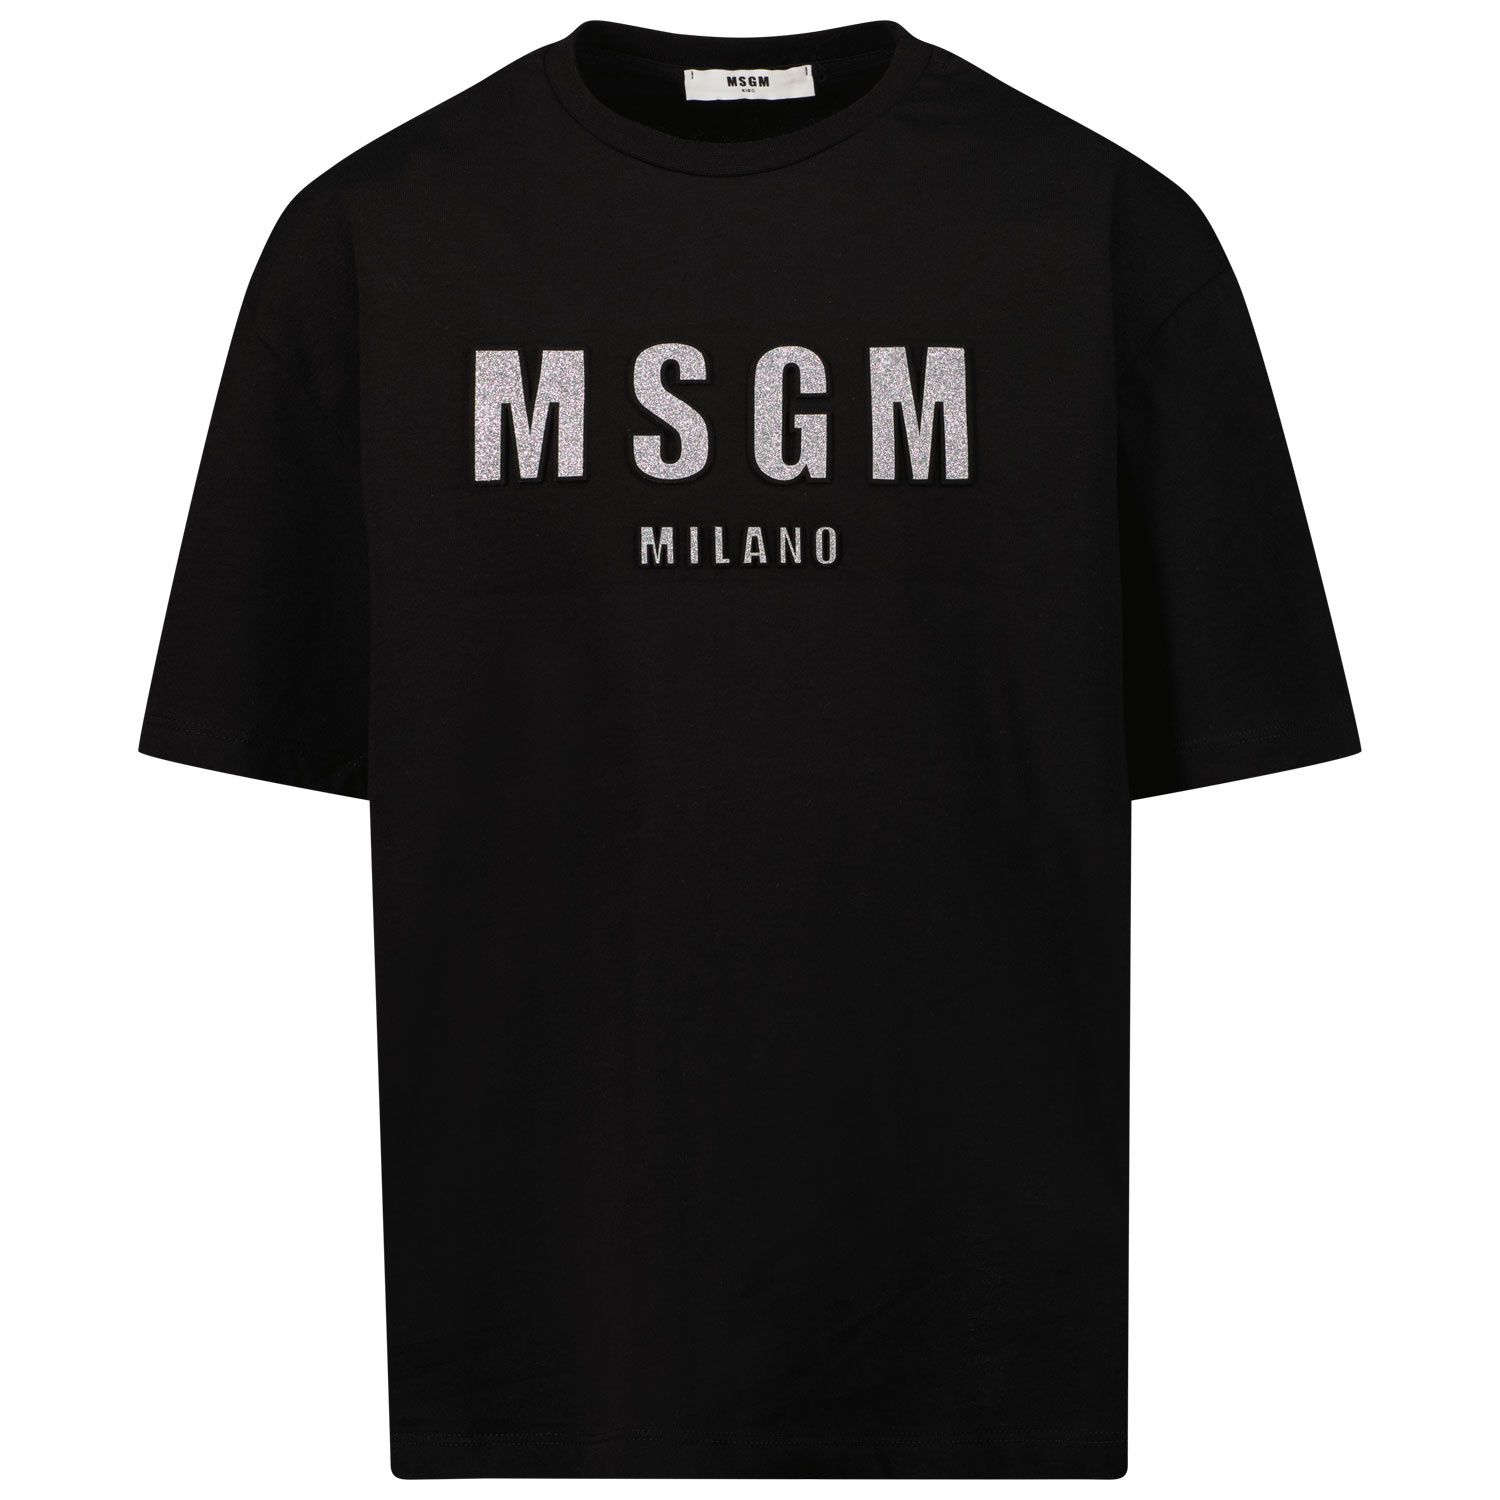 Afbeelding van MSGM 27706 kinder t-shirt zwart